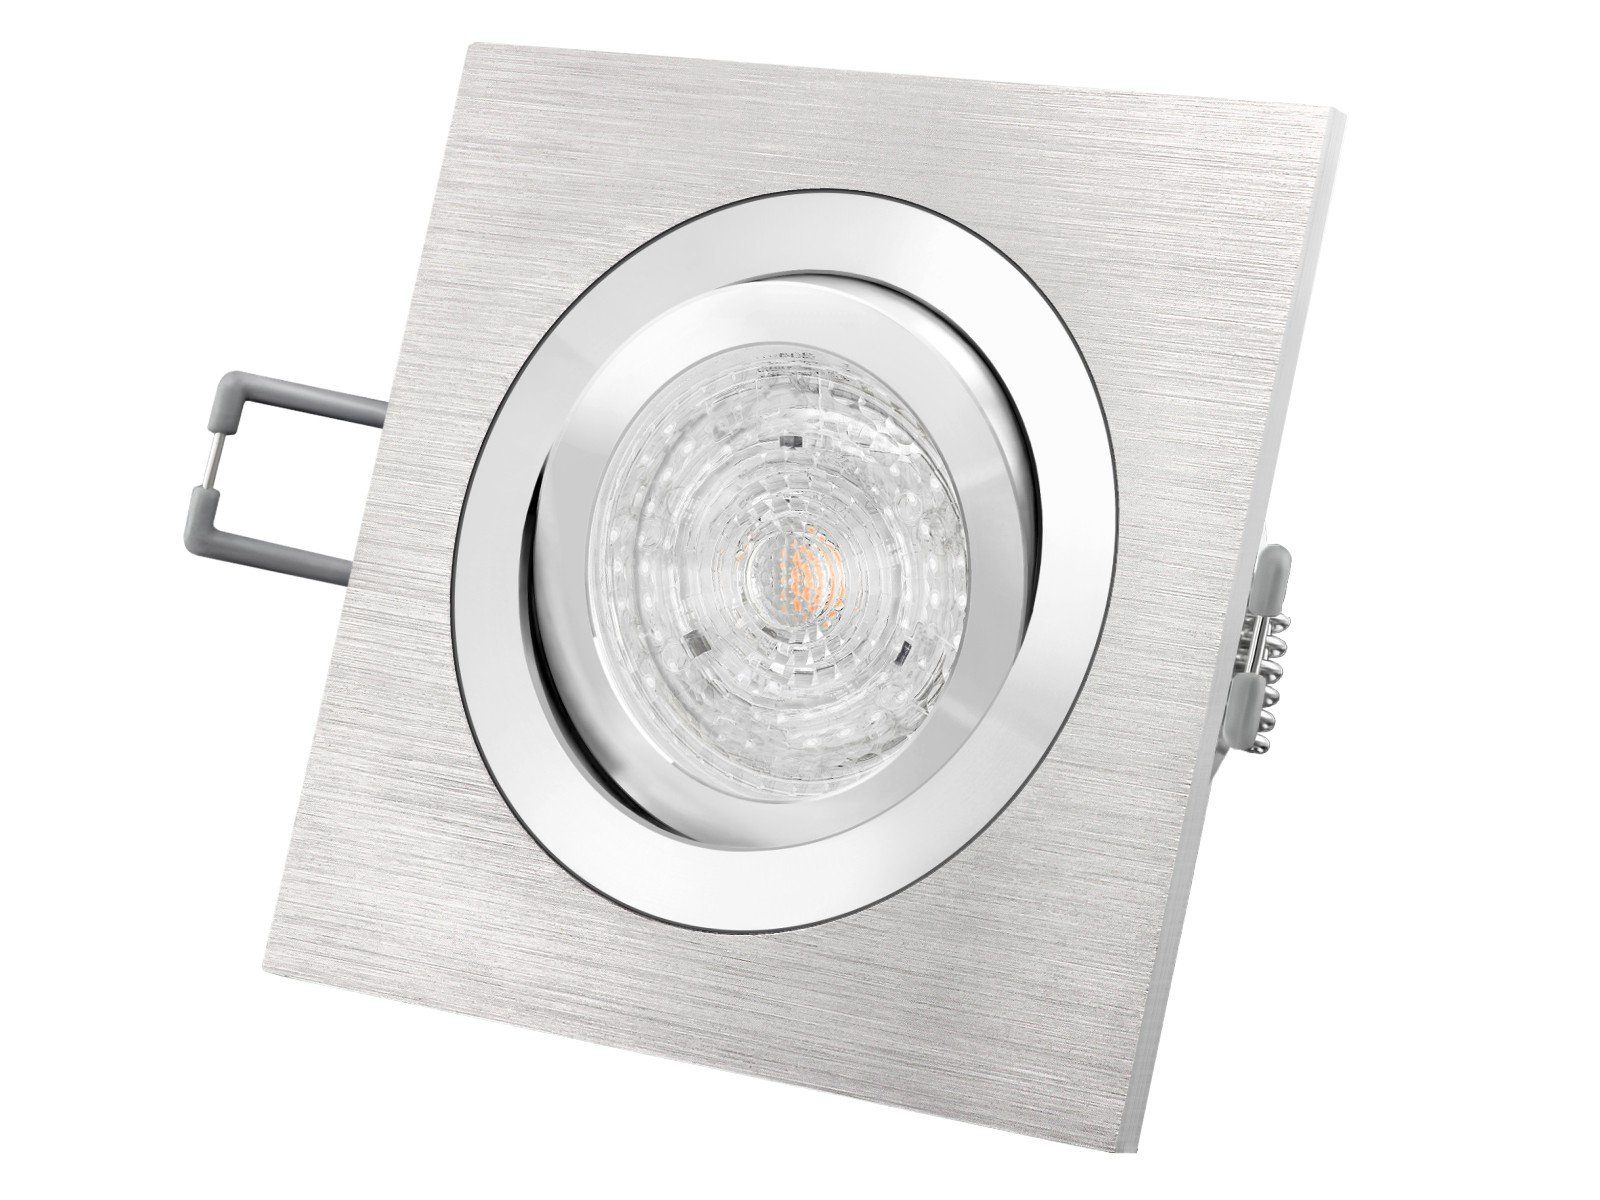 SSC-LUXon LED Einbaustrahler QF-2 Alu LED-Einbaustrahler schwenkbar, 4,9W LED warm weiss DIMMBAR, Warmweiß